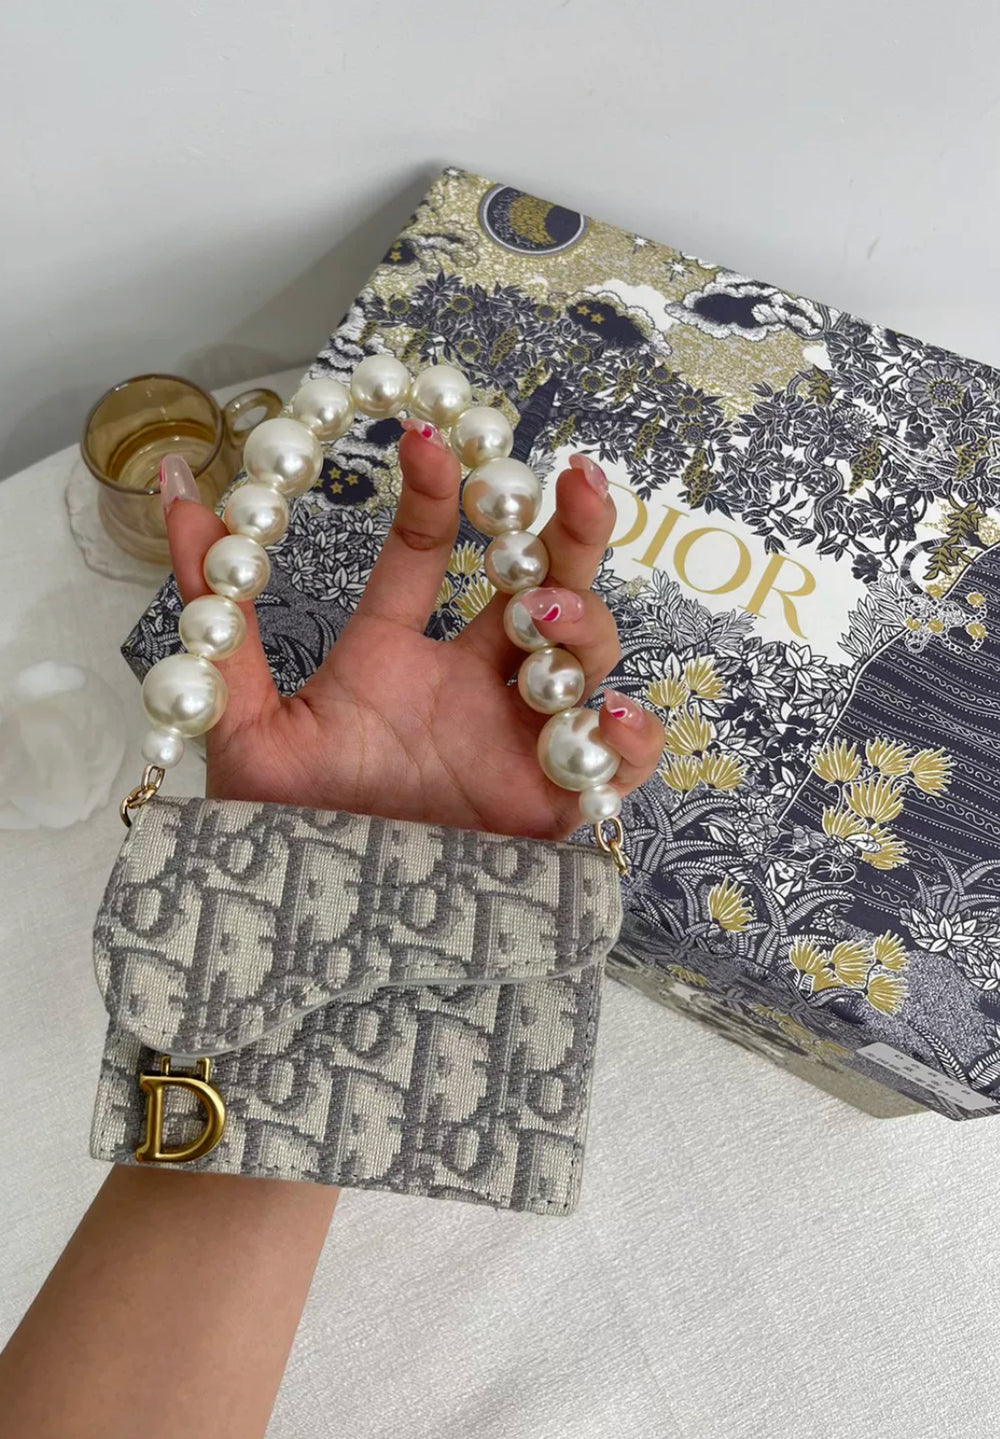 Converter Kit for Dior Card Holder – BRAG MY WALLET